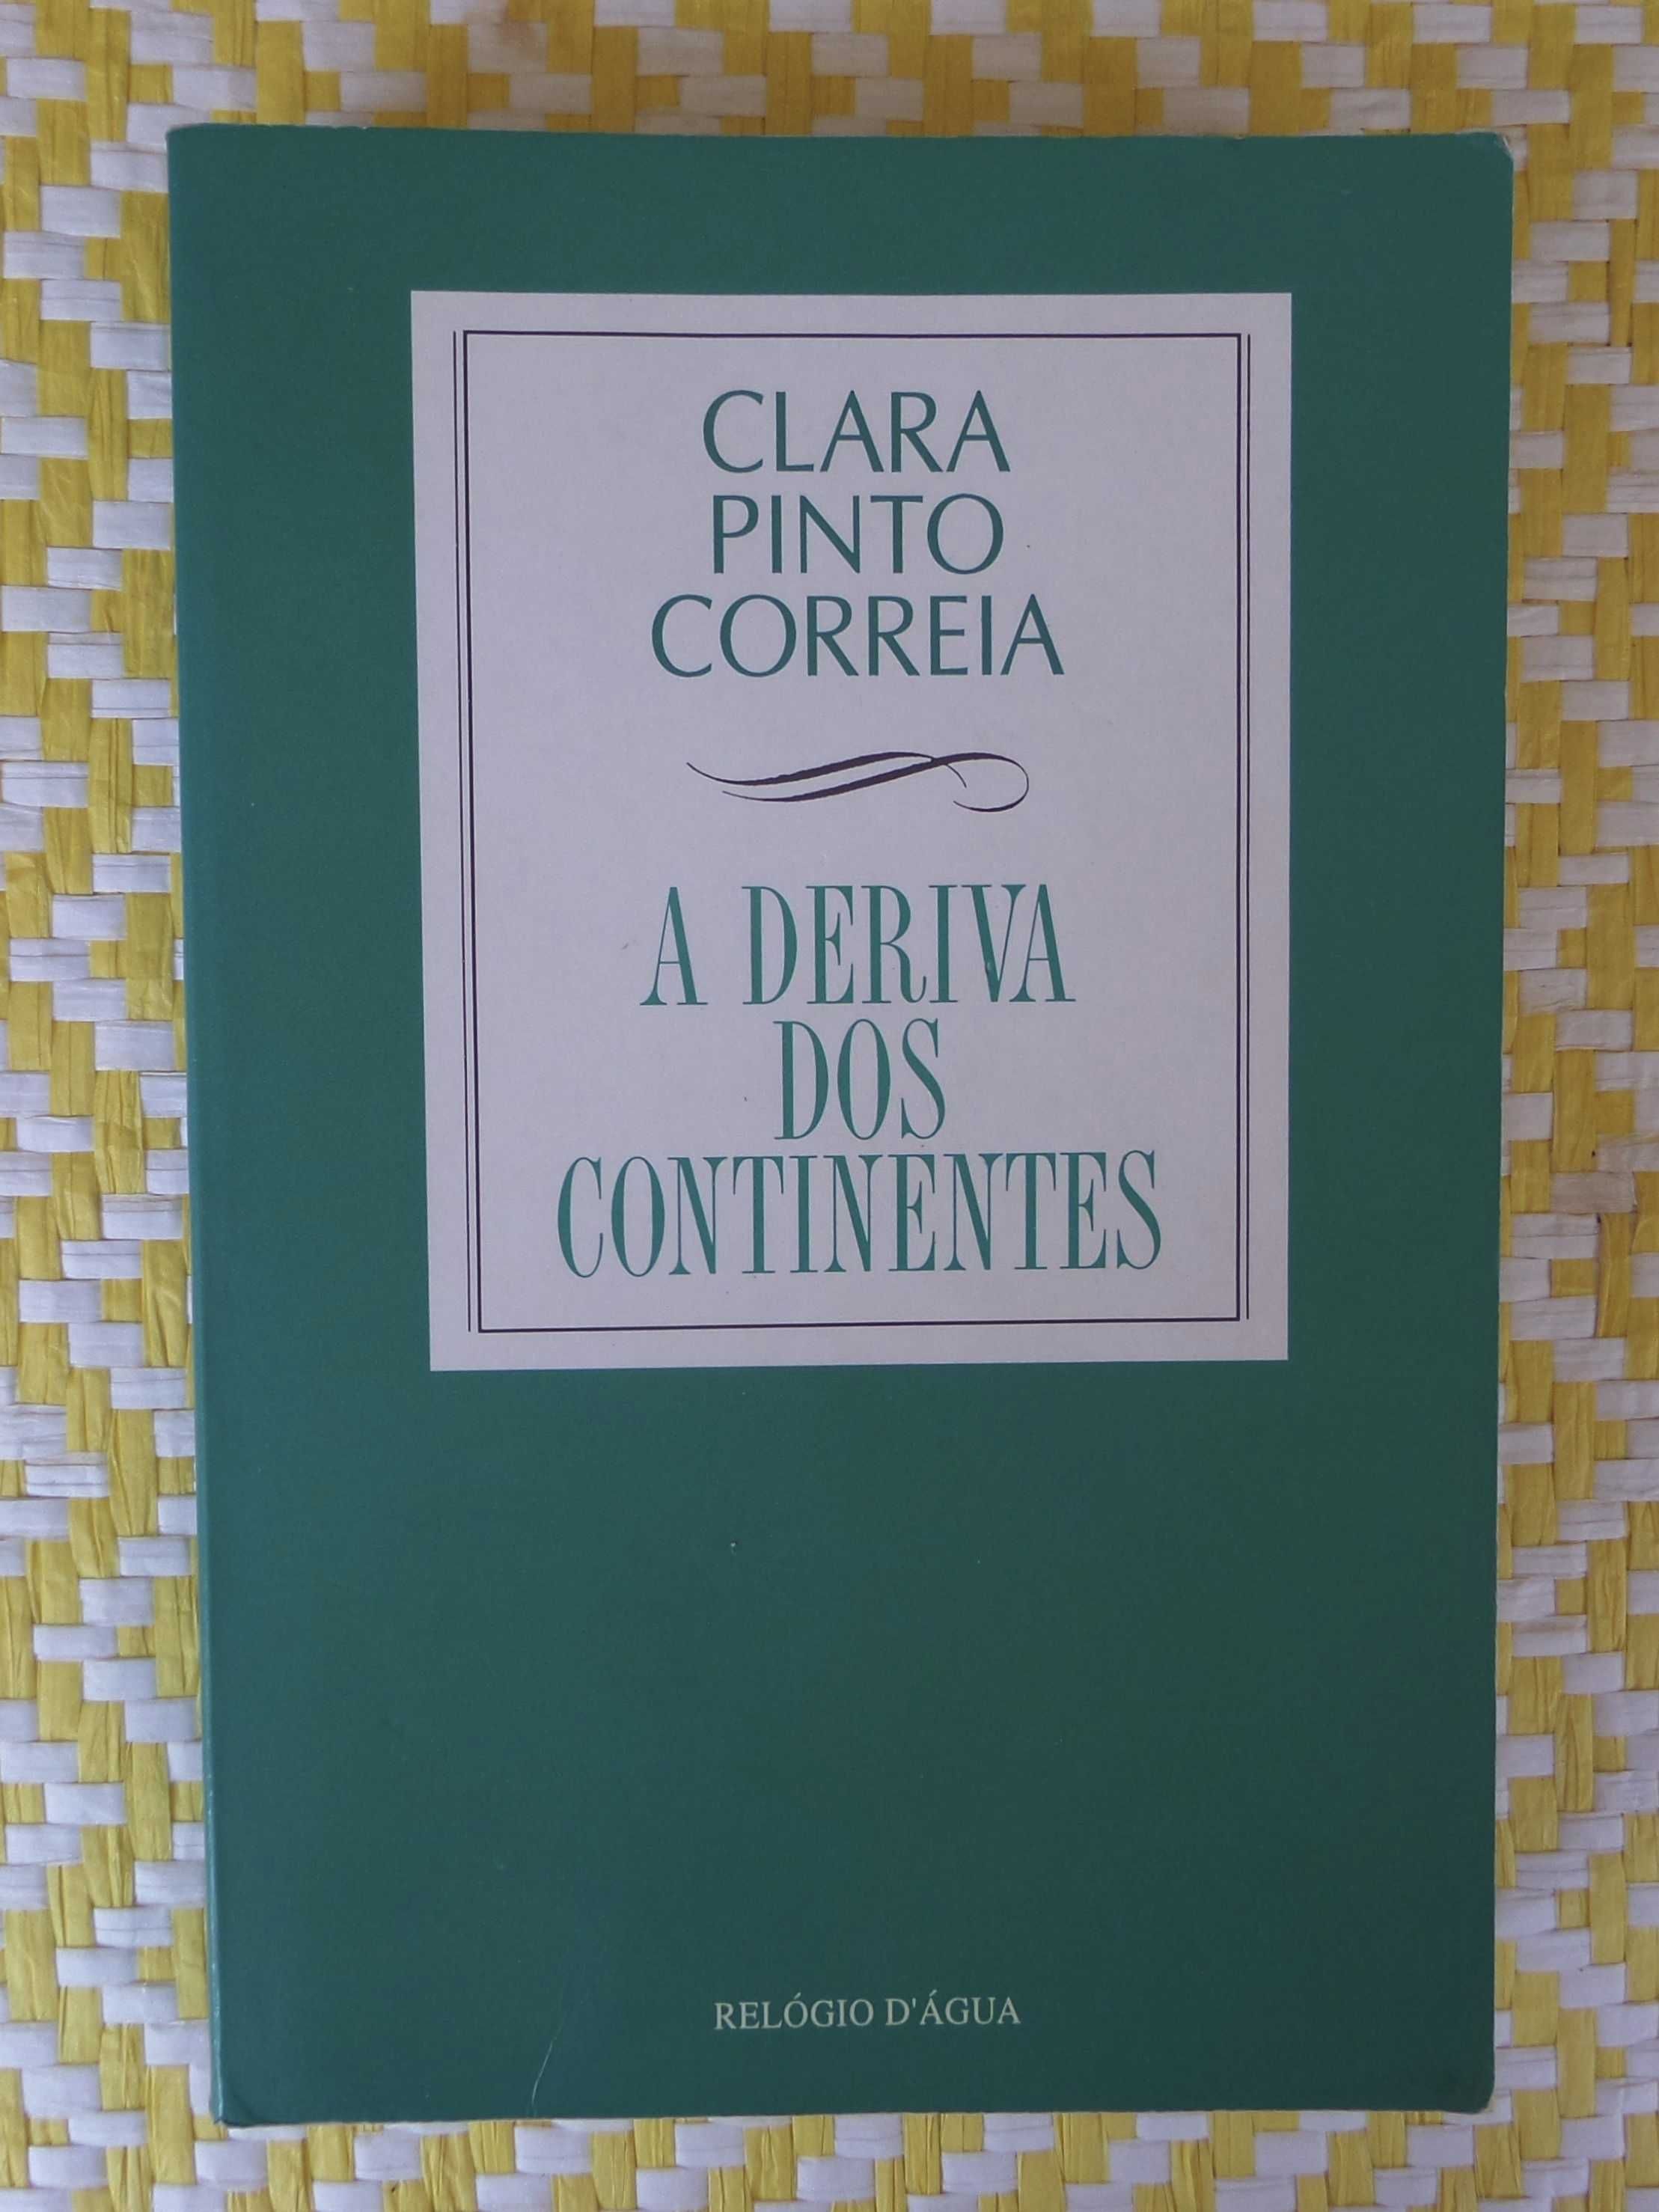 A Deriva dos Continentes
de Clara Pinto Correia